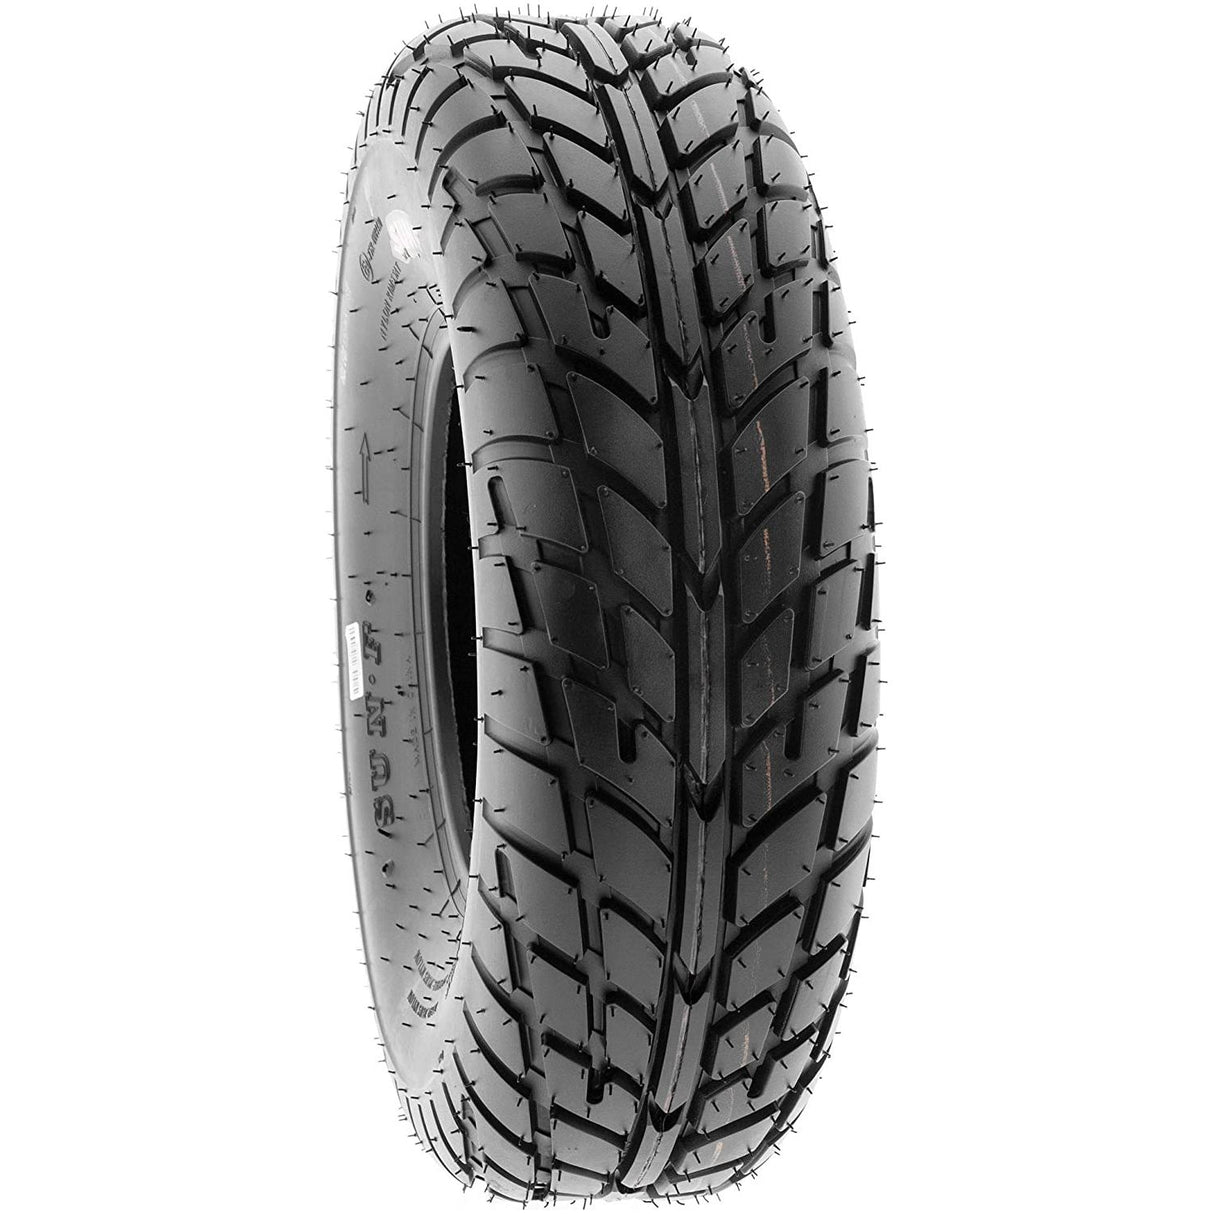 Flat Track TT Tires 19.00 x 6.00 - 10 (PAIR)